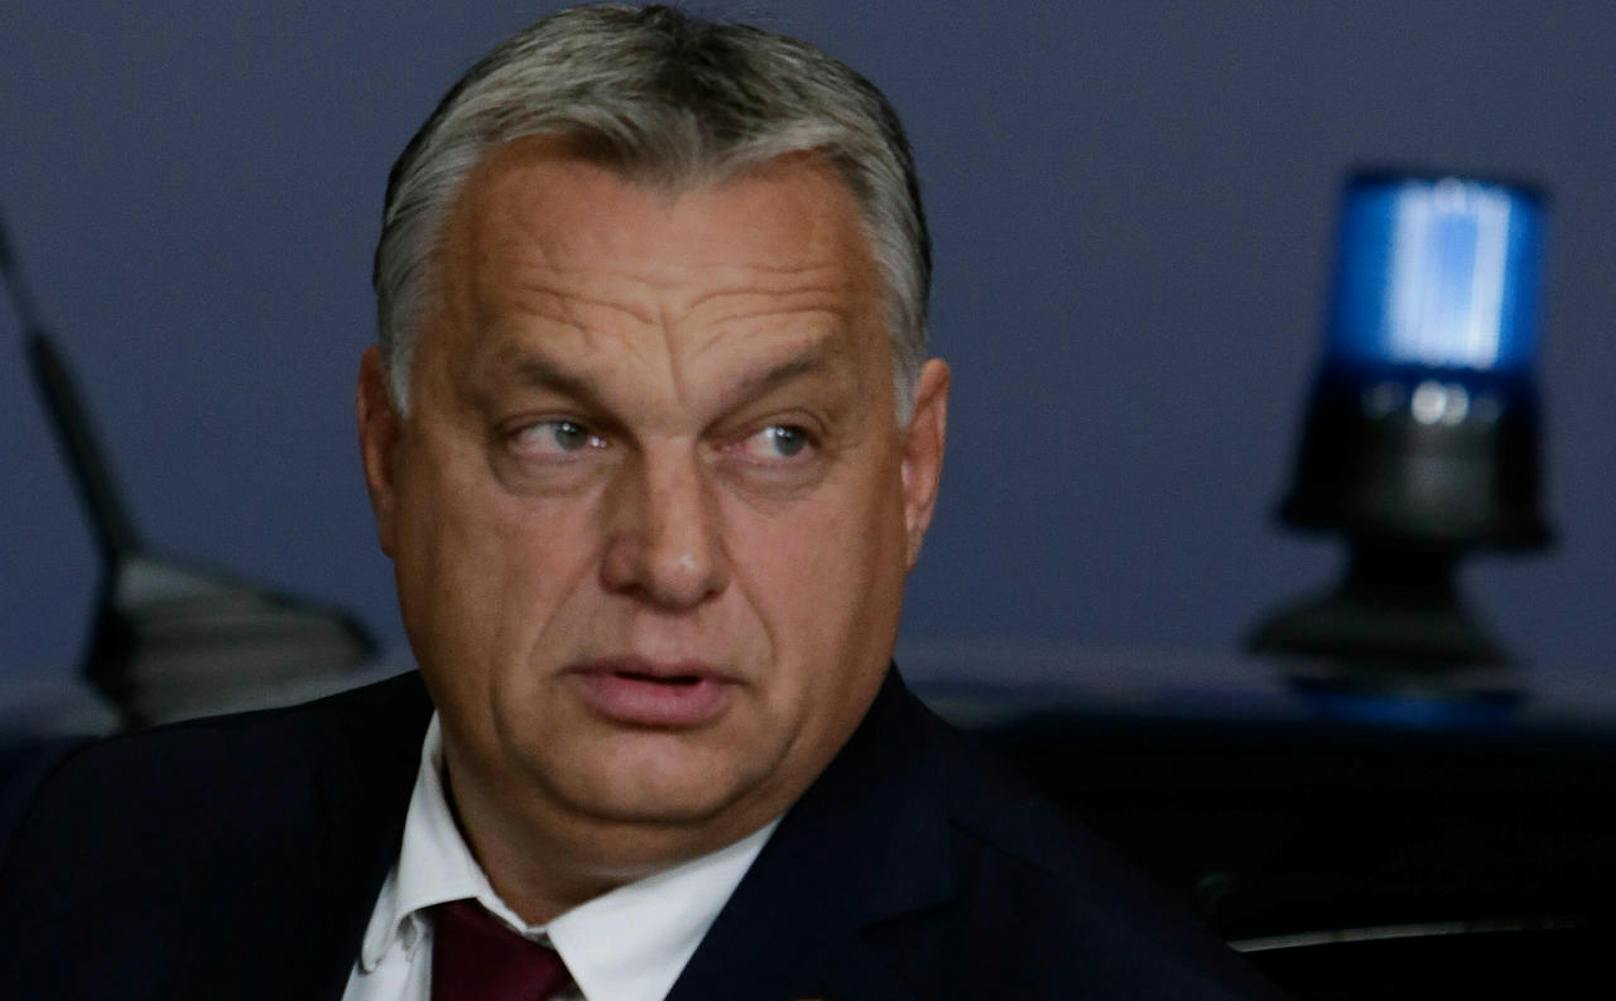 <b>Platz 34: Ungarn</b>
Der ungarische Premierminister Viktor Orban verdient jährlich <b>77.600 Euro</b>, im selben Zeitraum bekommt ein Ungar im Schnitt 23.300 Euro, ein Drittel davon